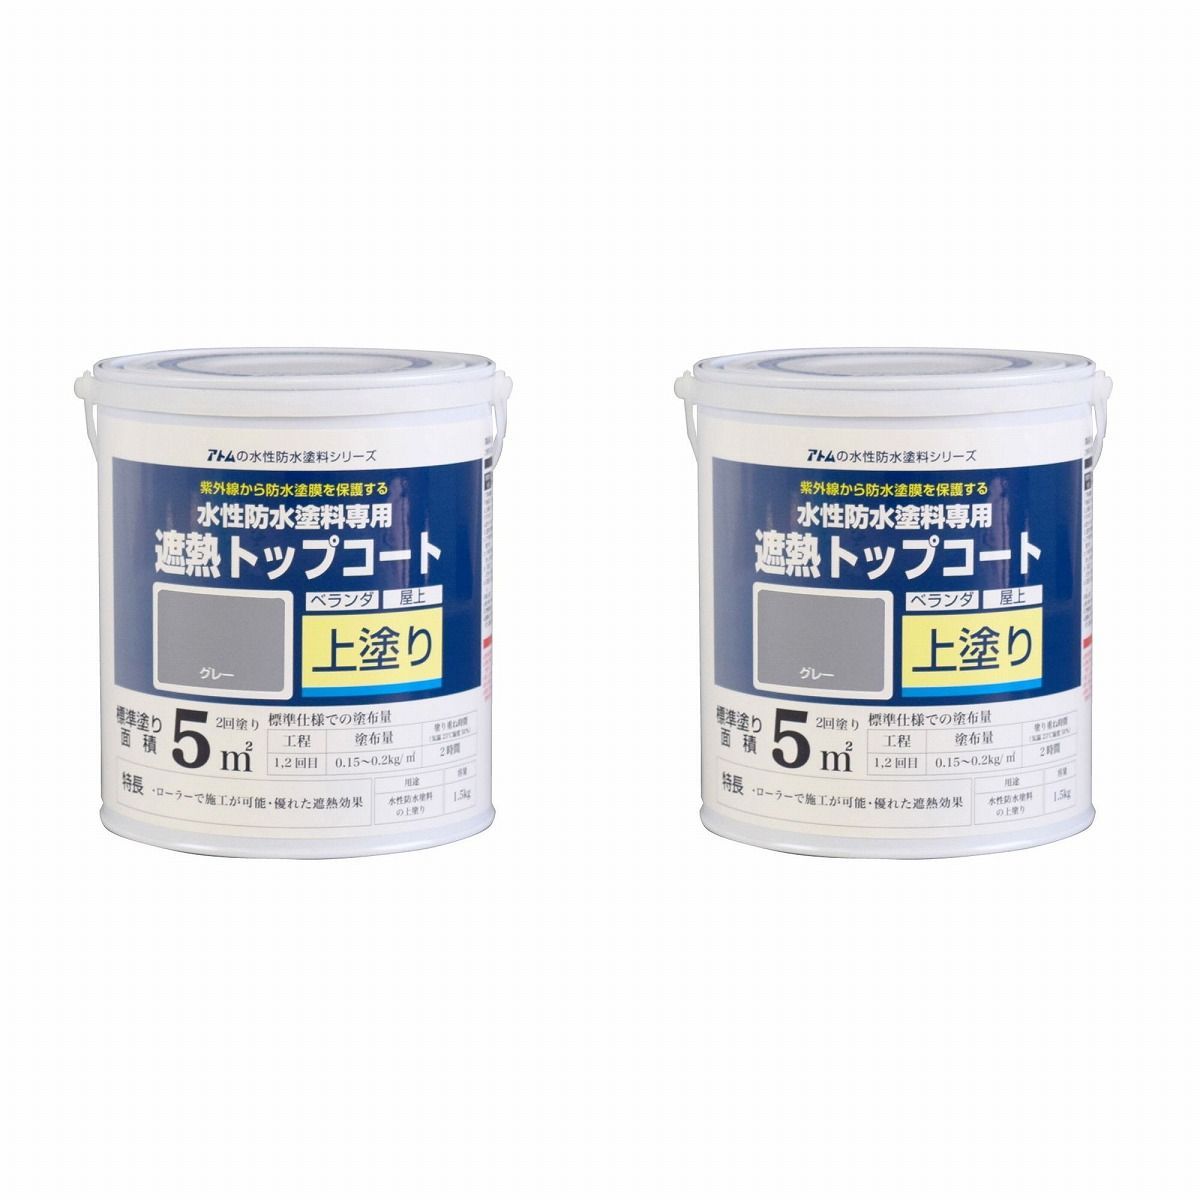 アトムハウスペイント - 水性防水塗料専用遮熱トップコート - 1.5kg